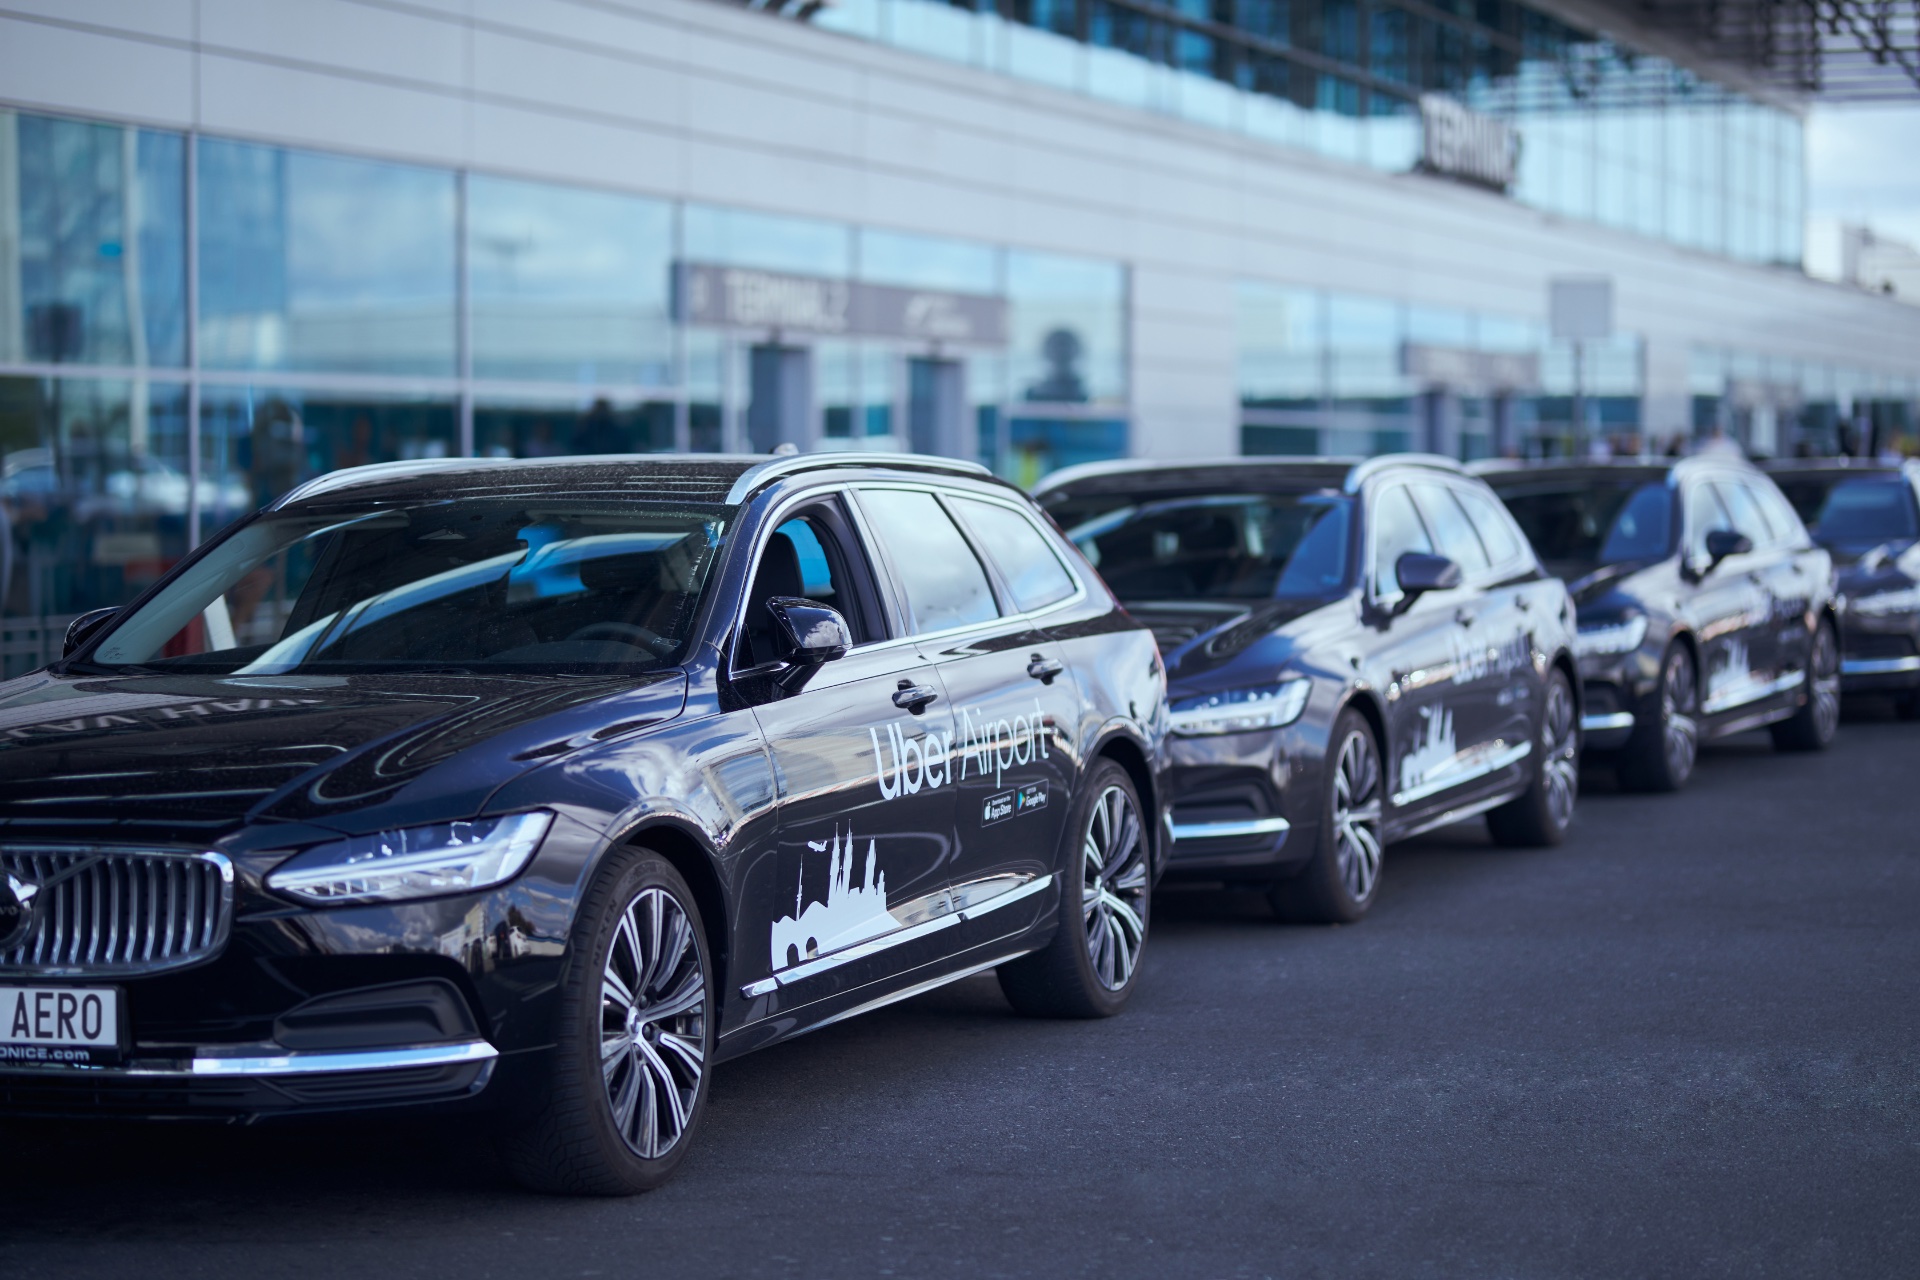 Uber převzal taxislužbu na pražském letišti. Zdroj: Uber